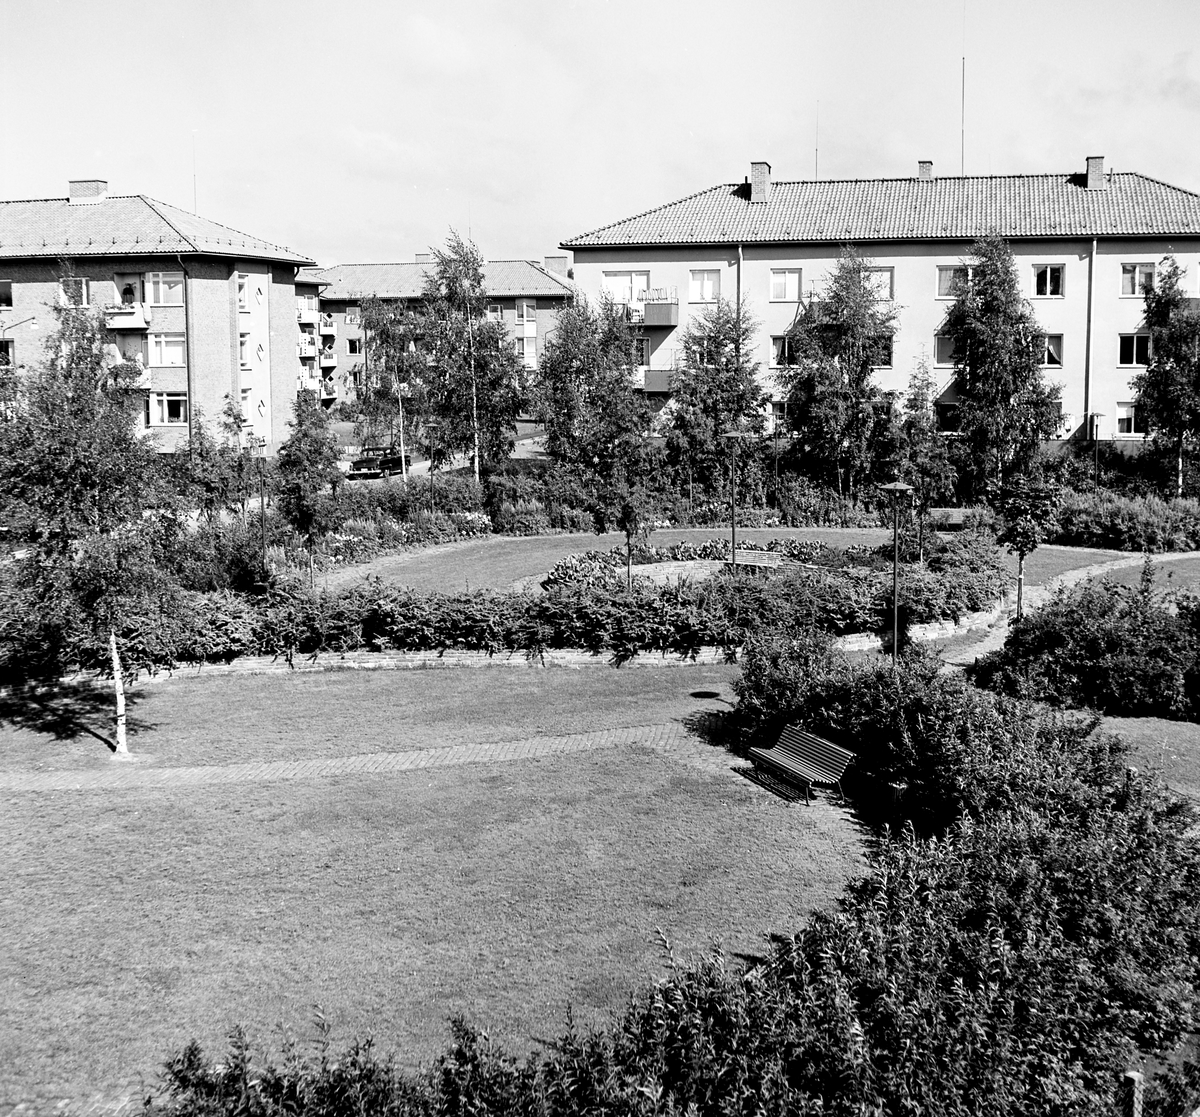 Någonstans i Värmland - från slutet av 1950-talet. Kommentar från användare: "Norrstrand, parken mellan Ulvsbygatan och Norrstrandsgatan. Huset närmast är Ulvsbygatan 16".